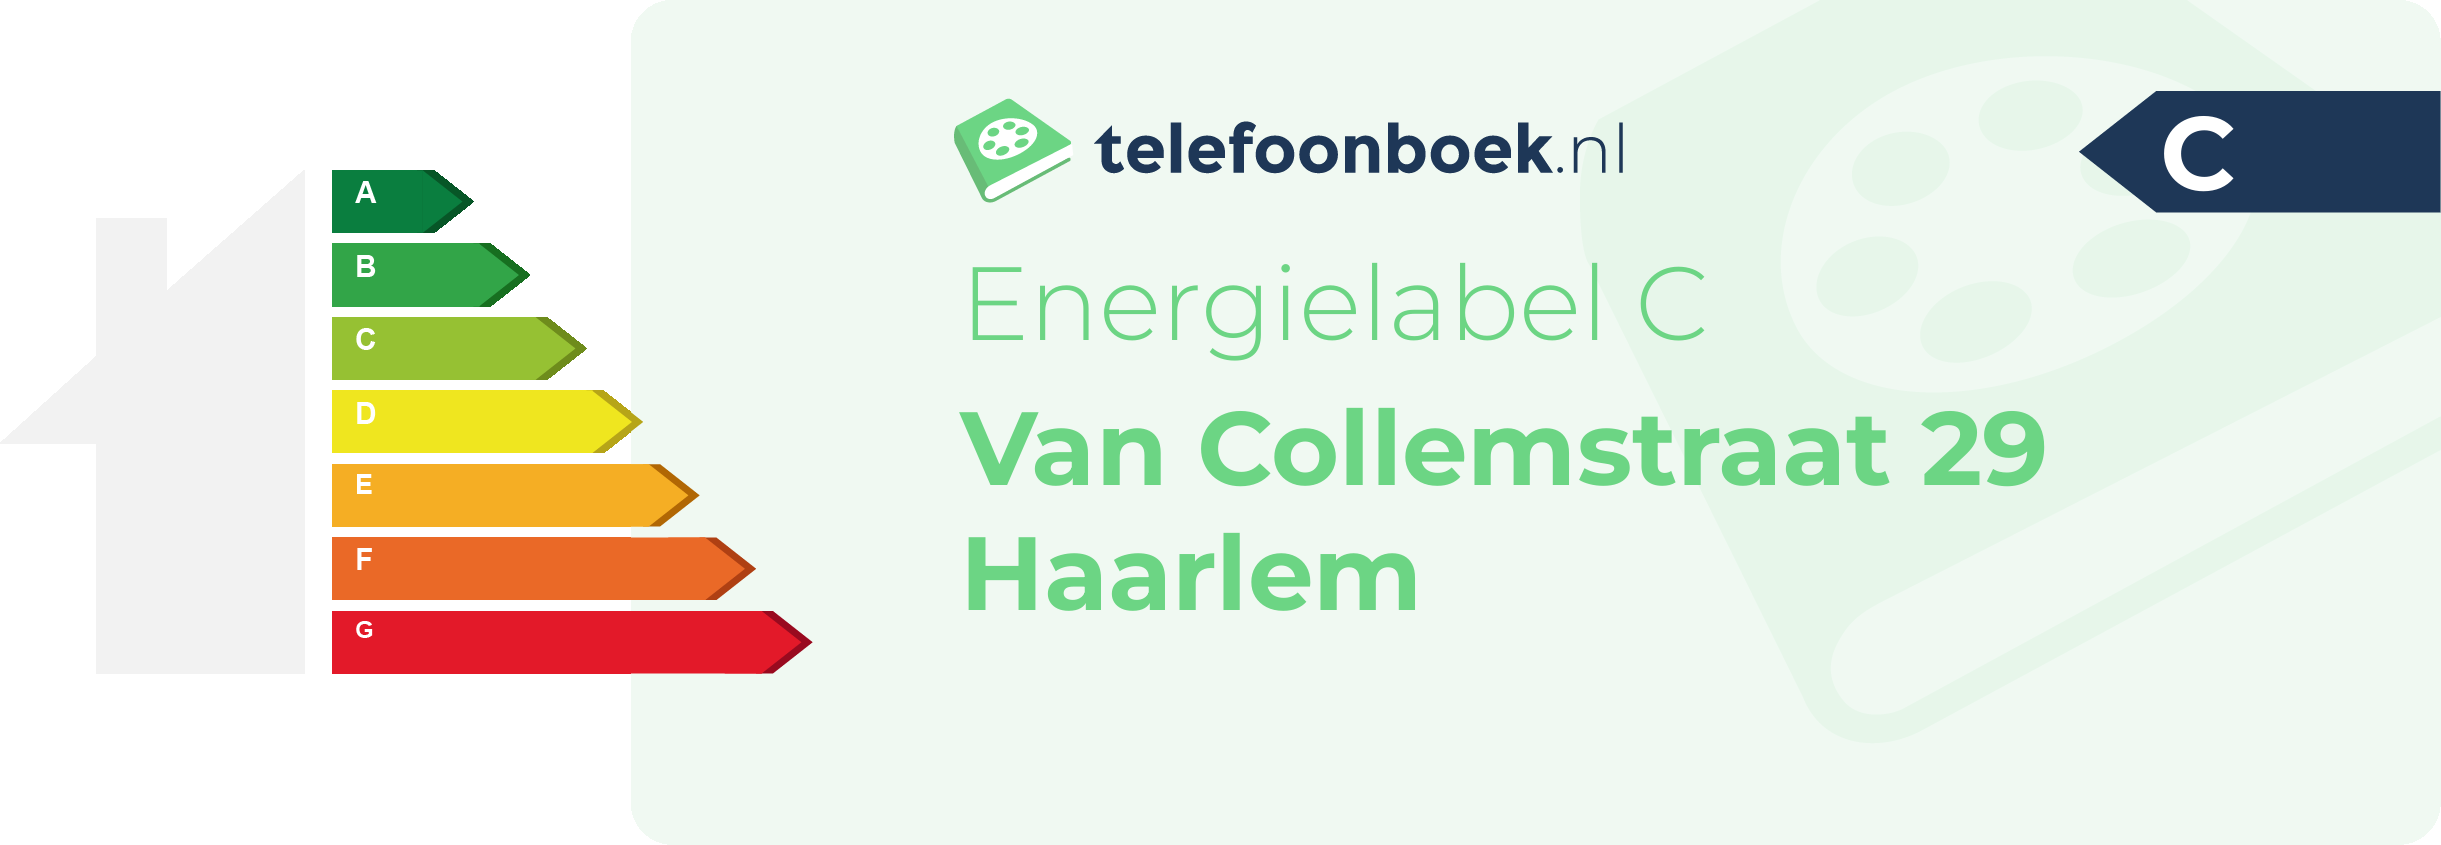 Energielabel Van Collemstraat 29 Haarlem